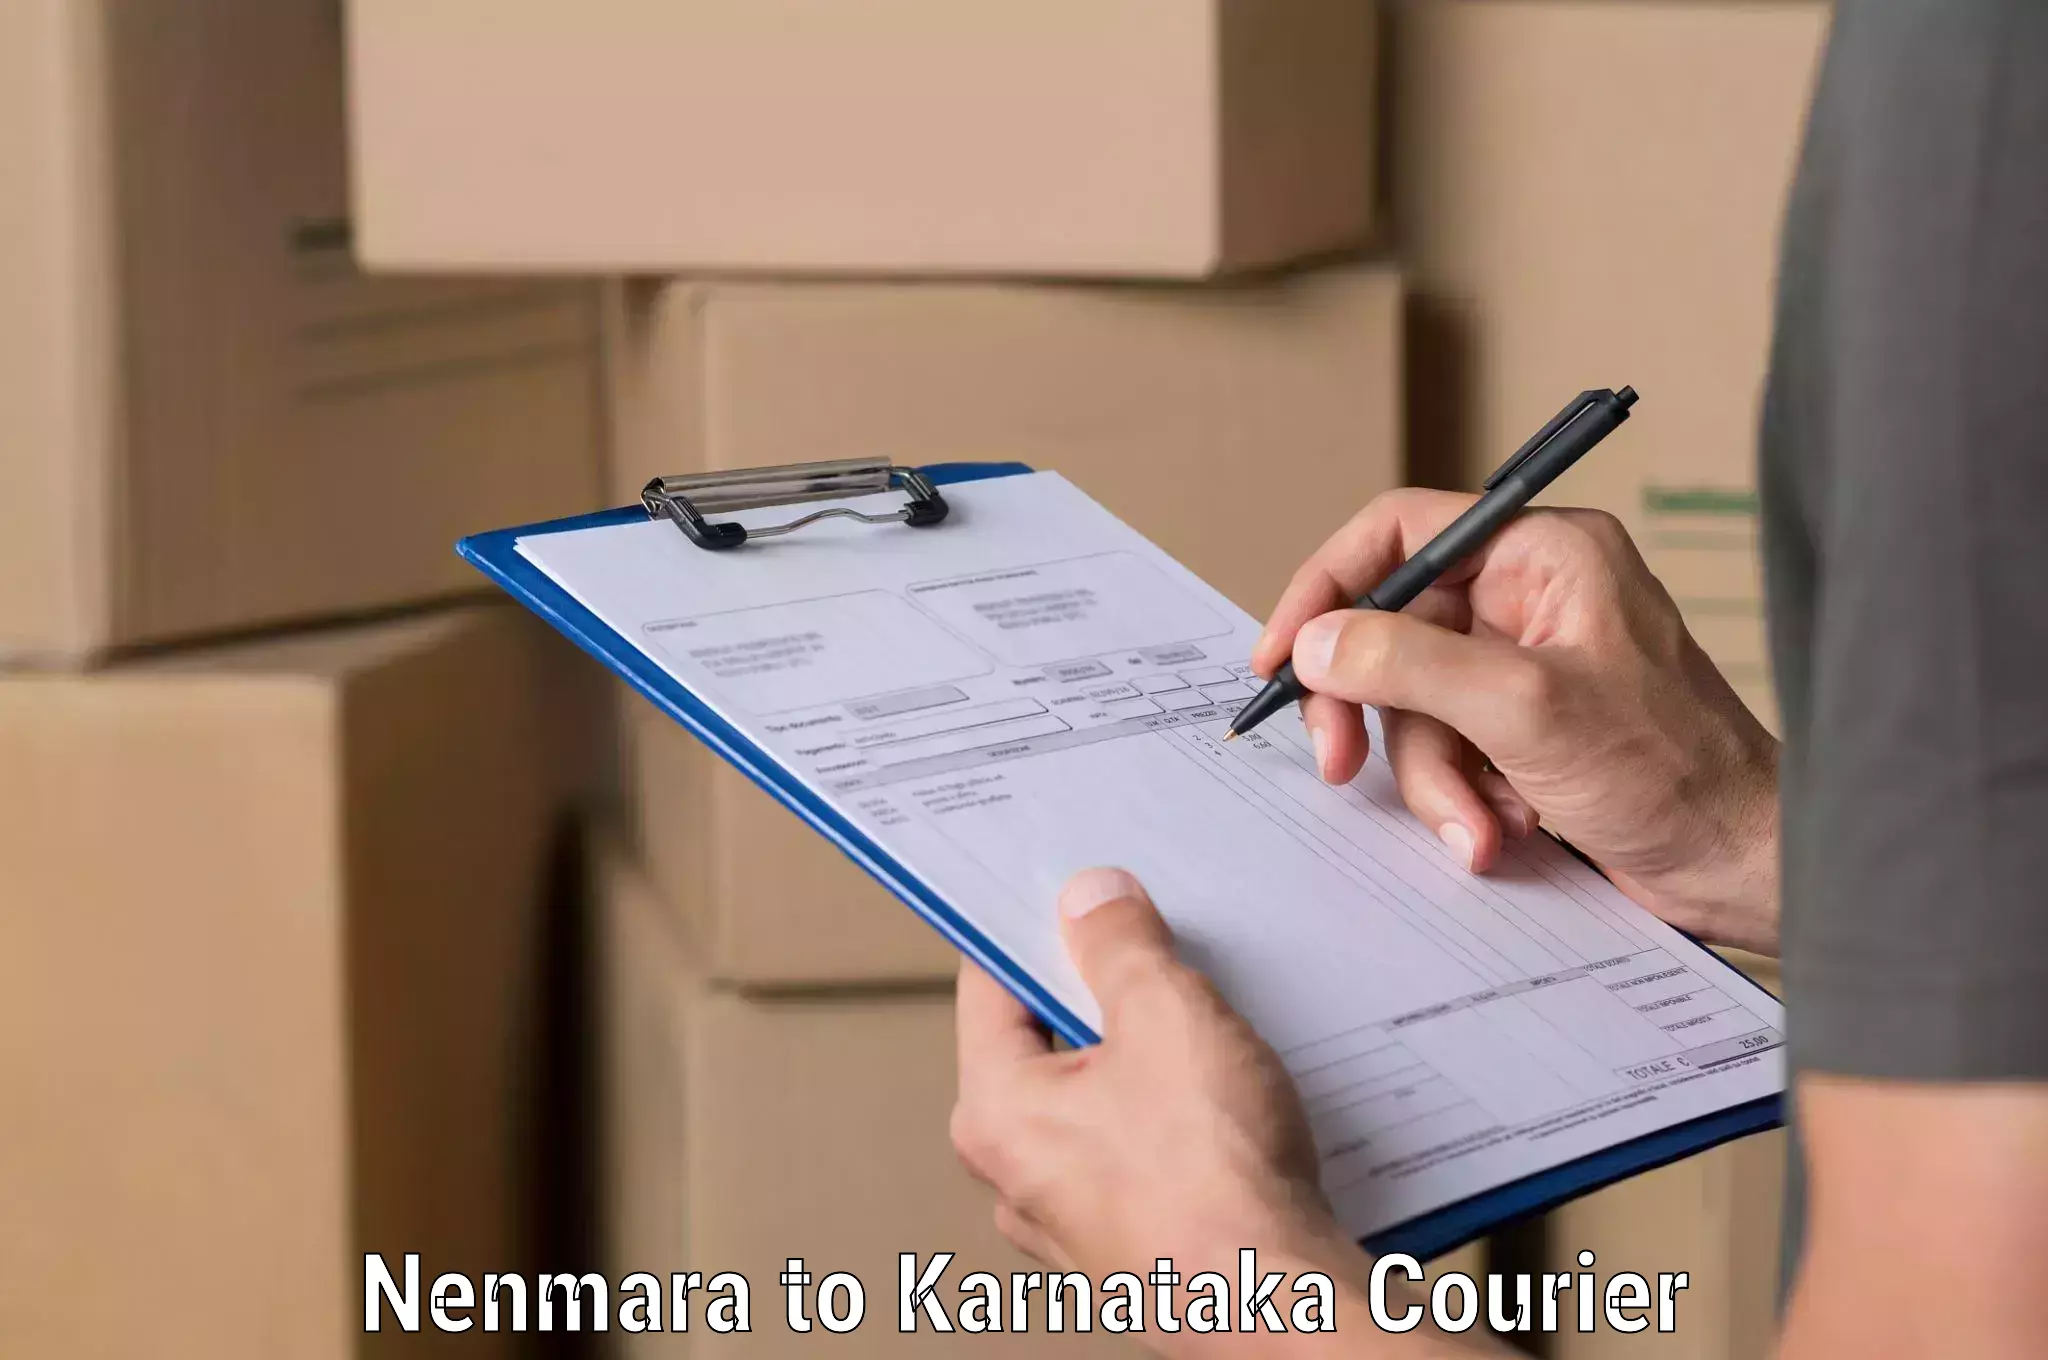 Premium courier services Nenmara to Kotturu